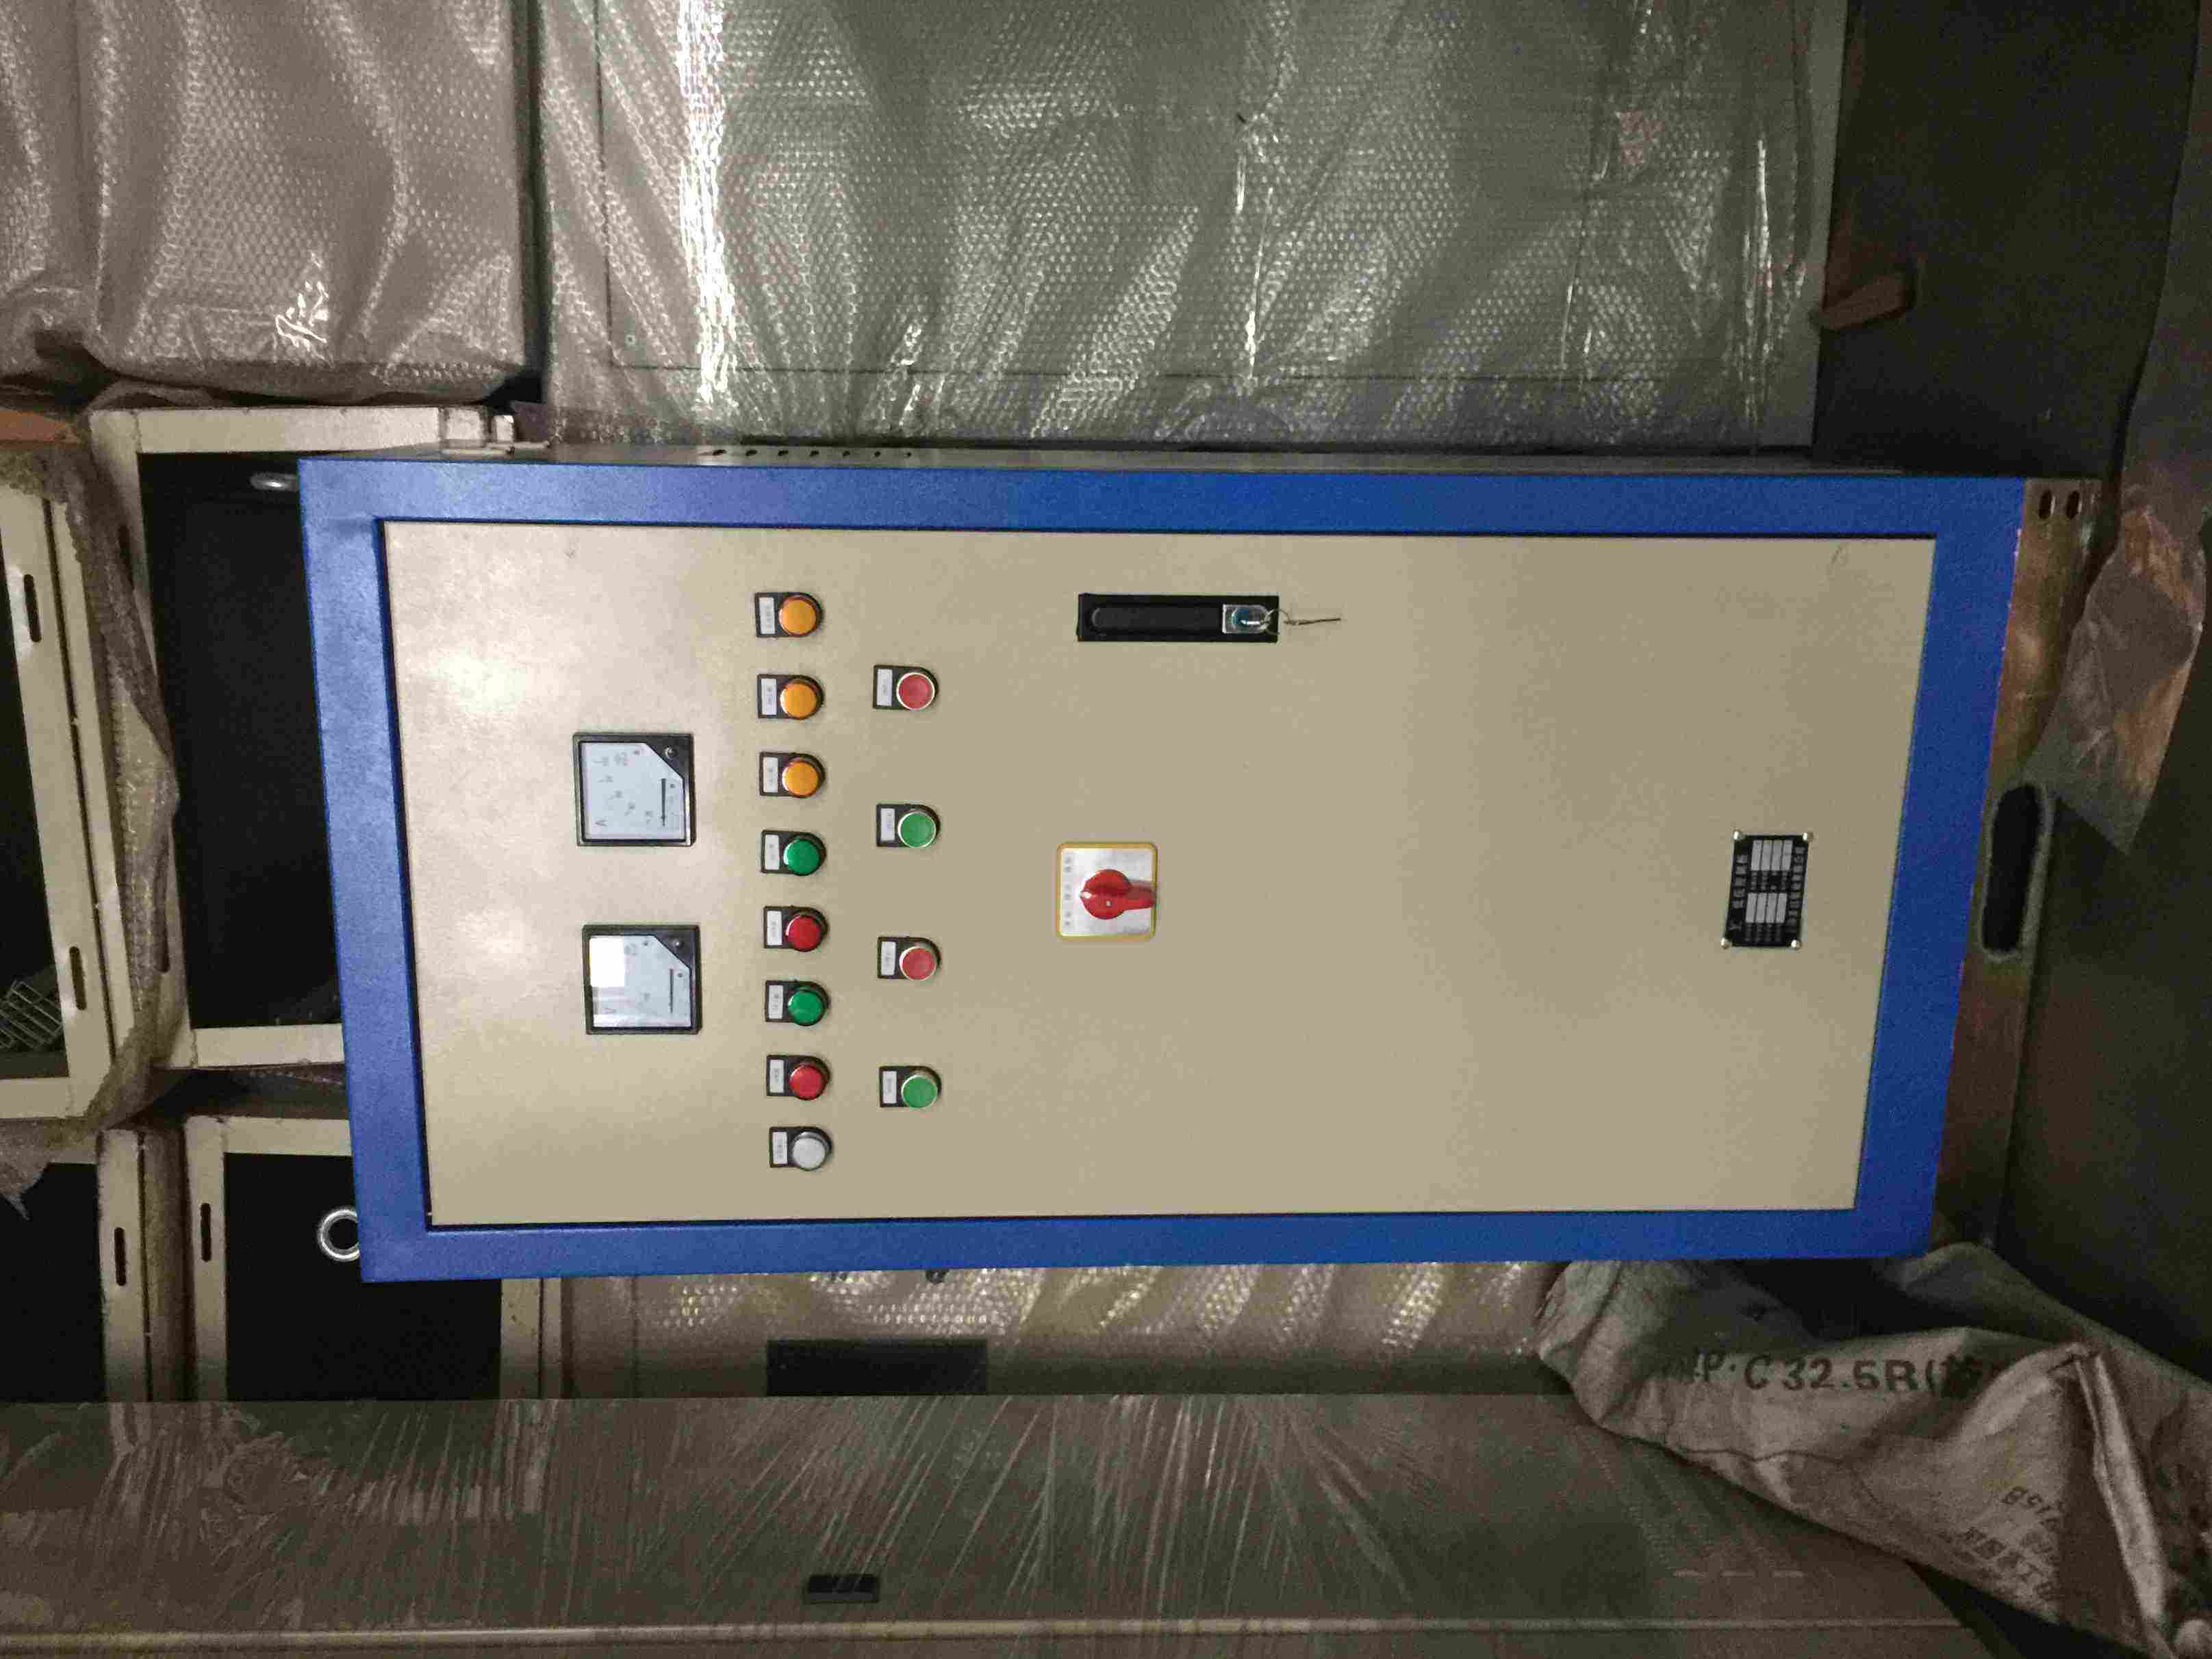 冷却泵控制柜(循环水泵控制柜)